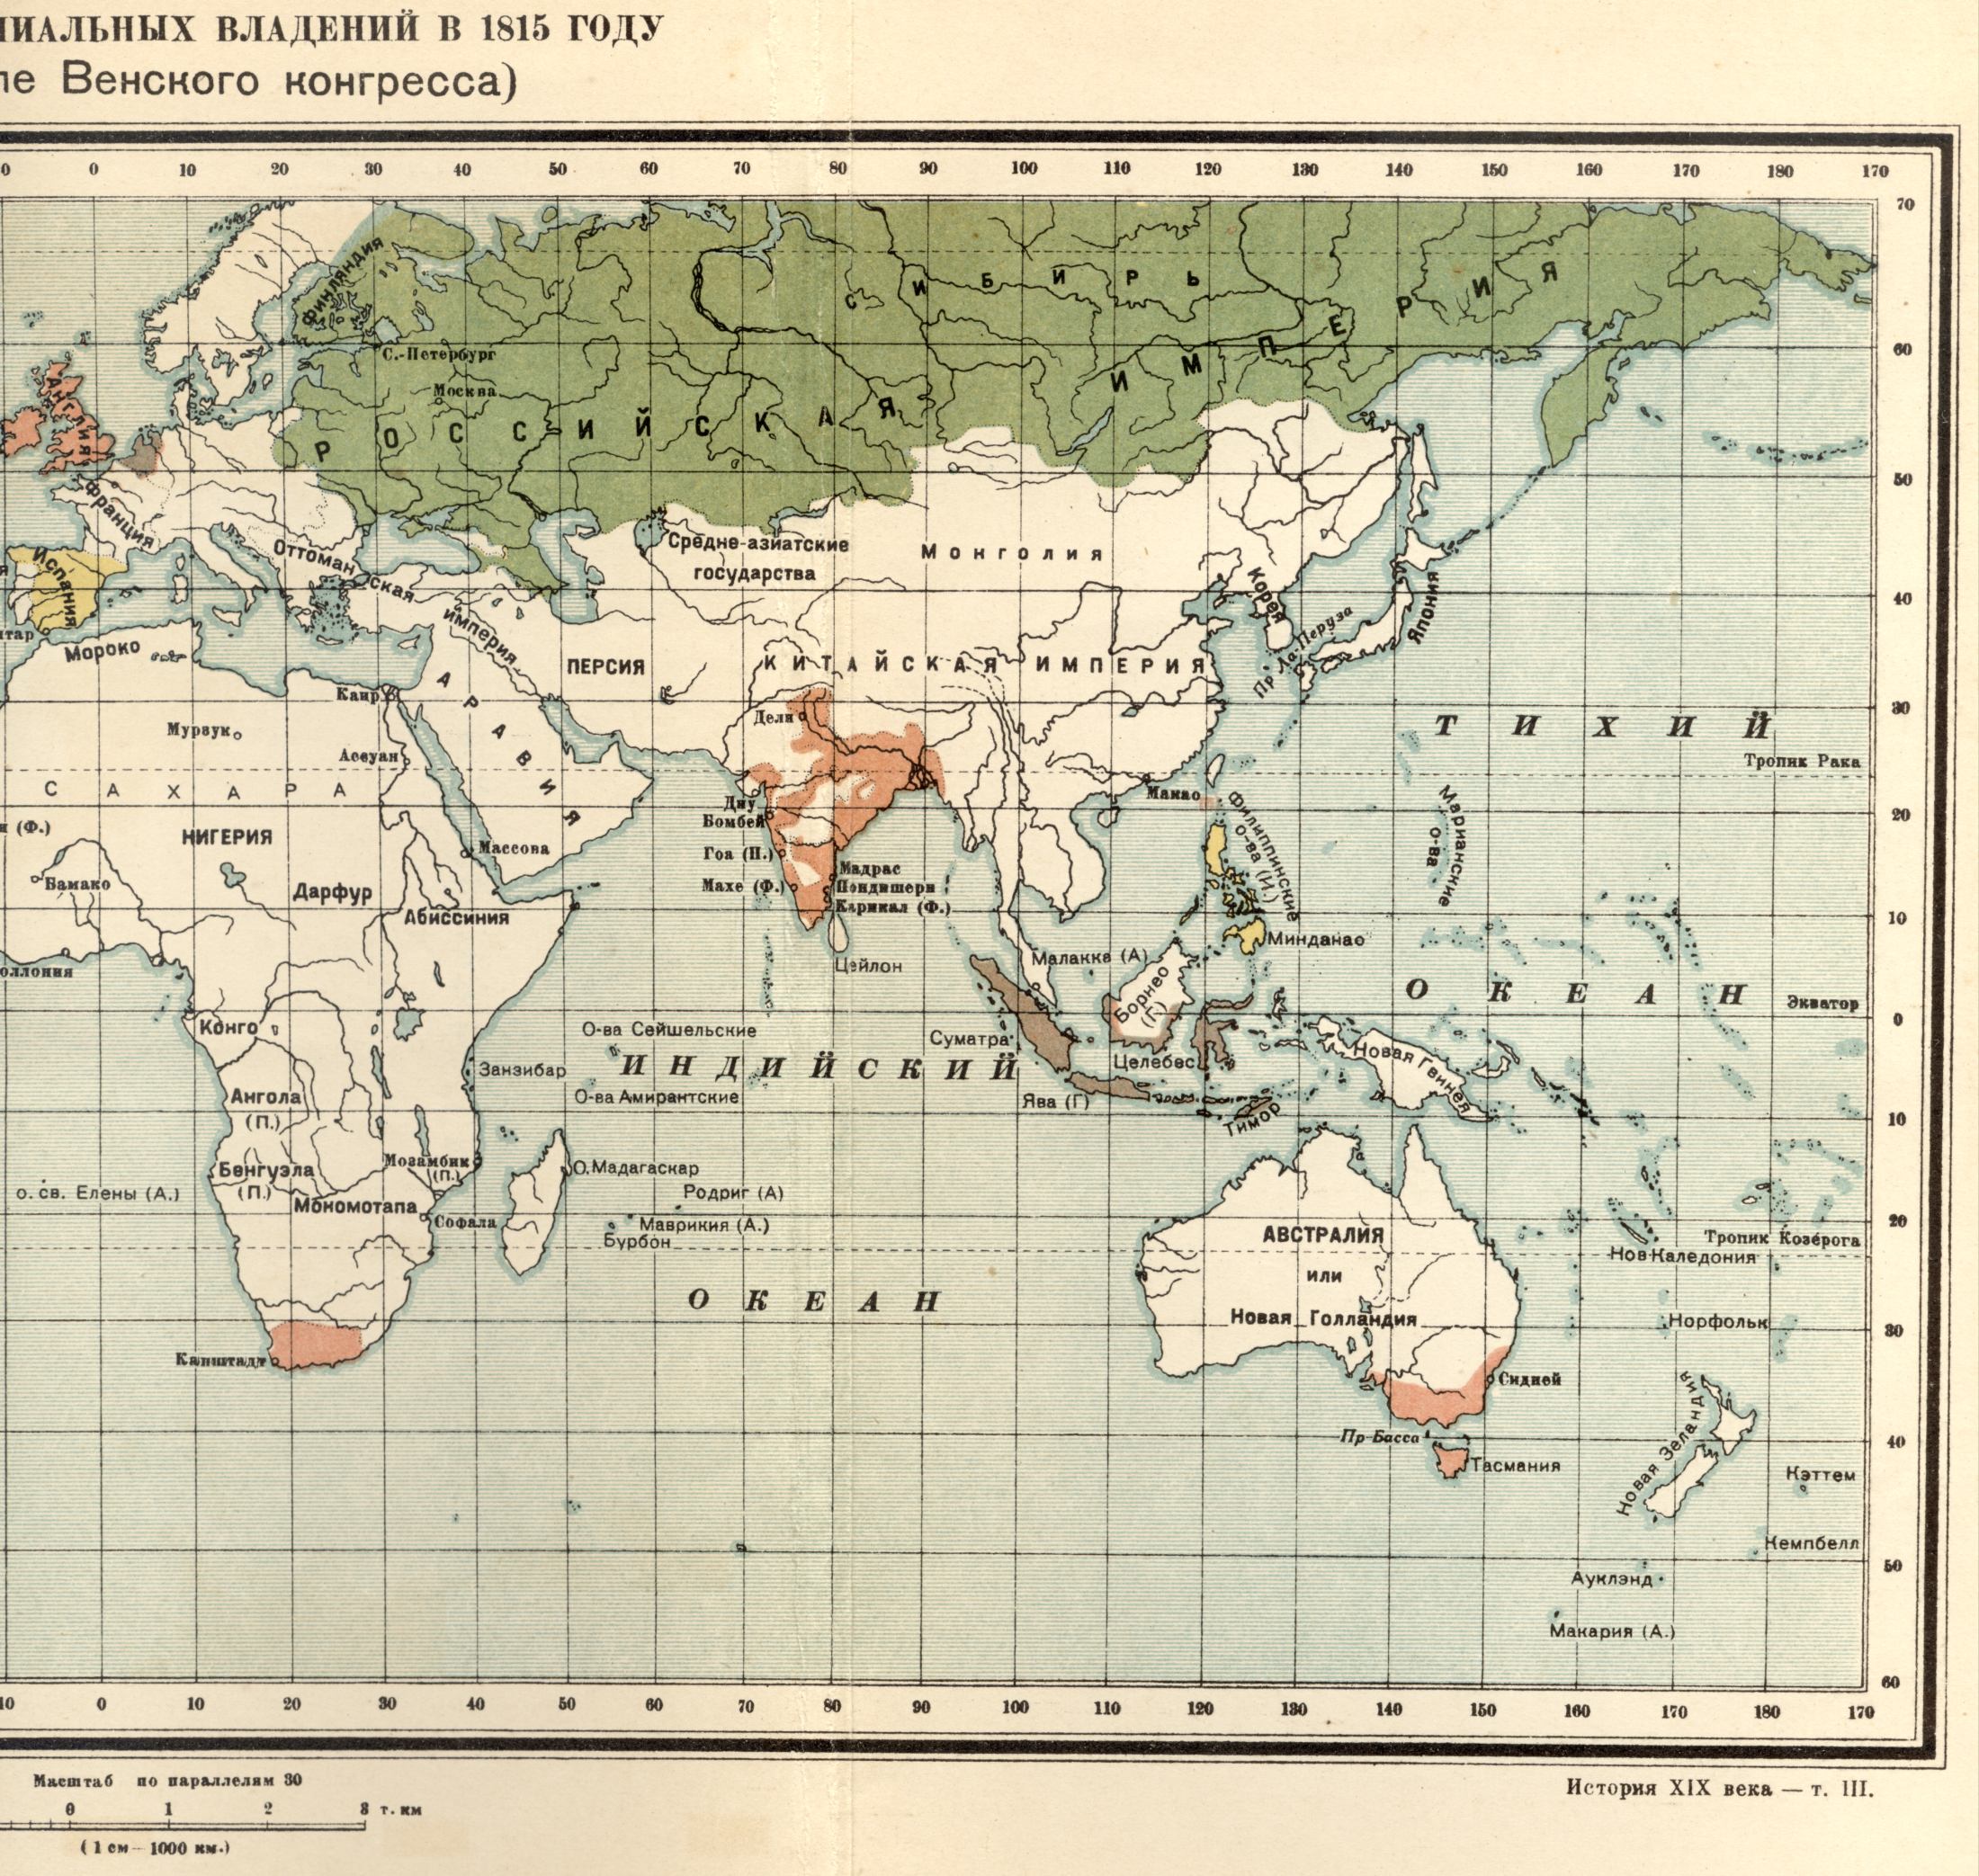 1815. Die politische Weltkarte - Karte von Kolonialbesitz im Jahre 1815 nach dem Wiener Kongress. Laden Sie eine detaillierte Karte, B0